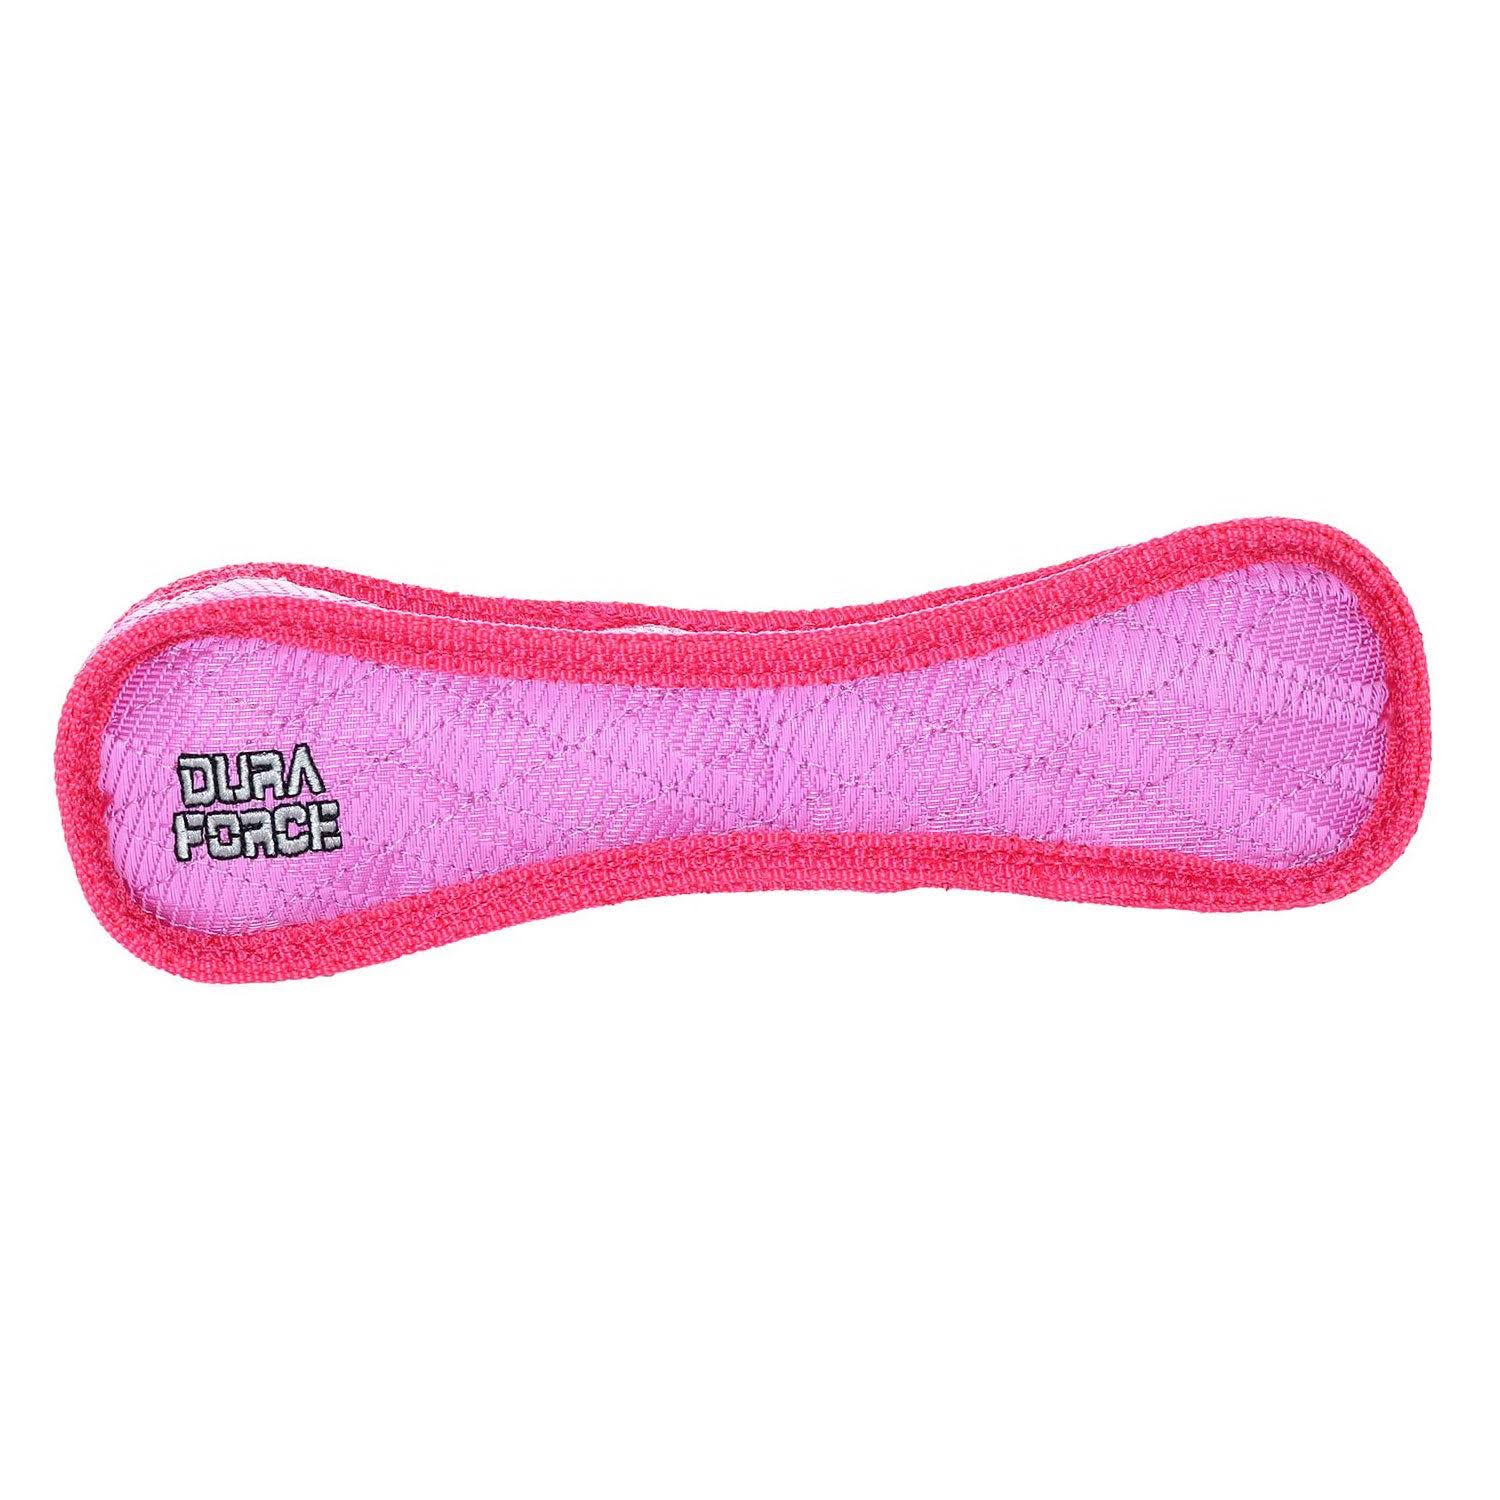 Duraforce Bone Dog Toy - Pink - Regular